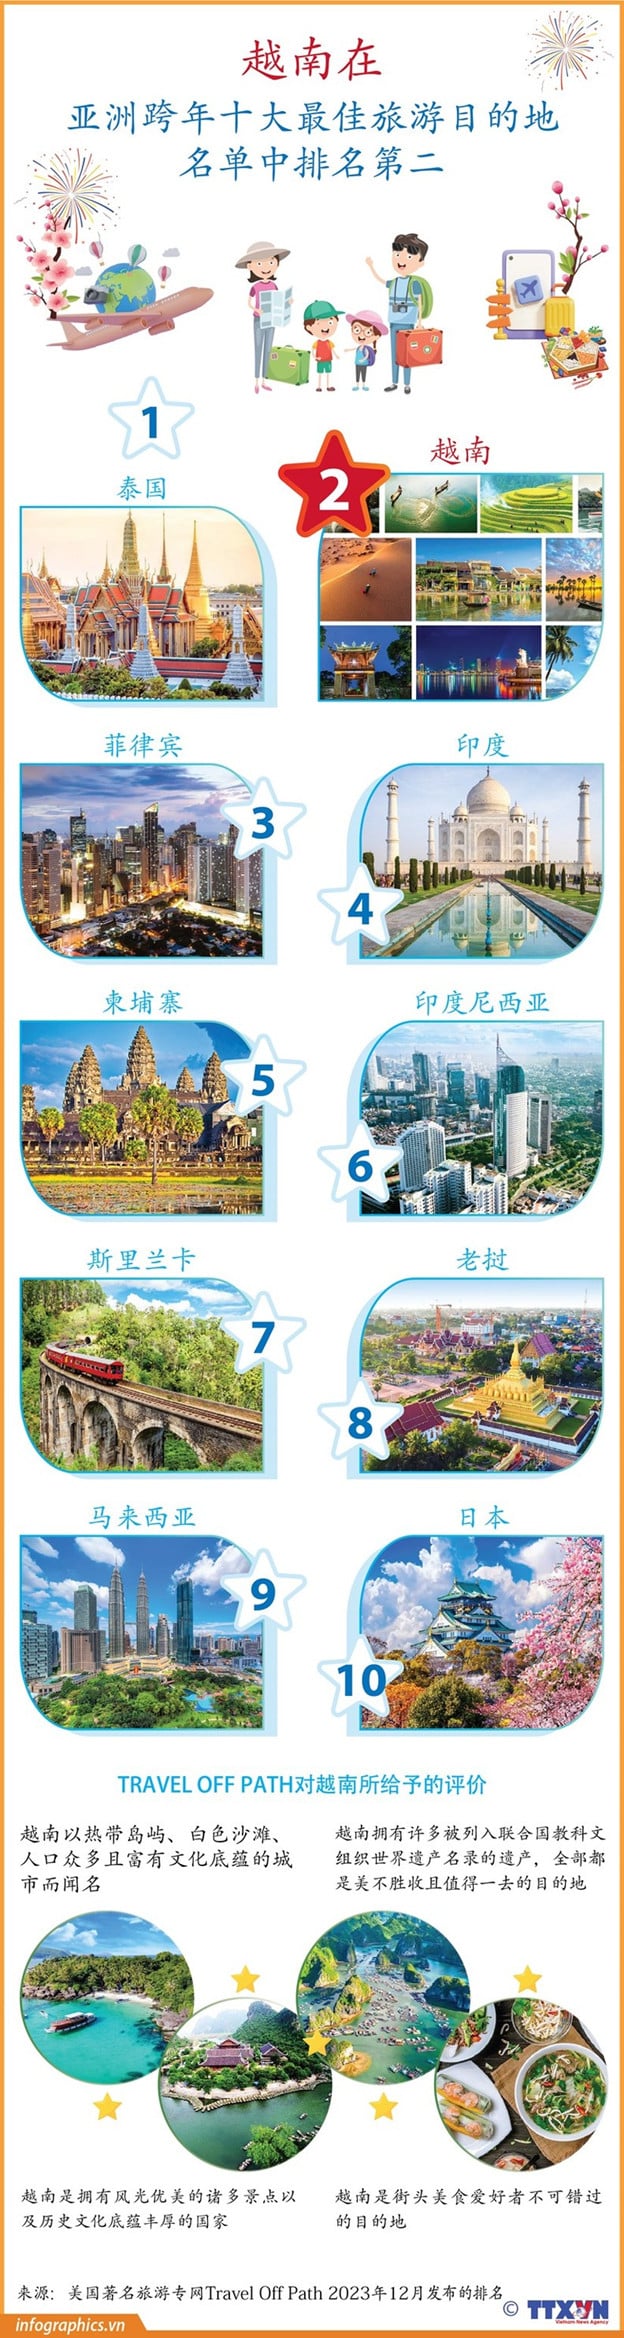 美国著名旅游网站Travel Off Path近日刊登关于亚洲跨年十大最佳旅游目的地名单的文章，其中越南在该名单中排名第二。